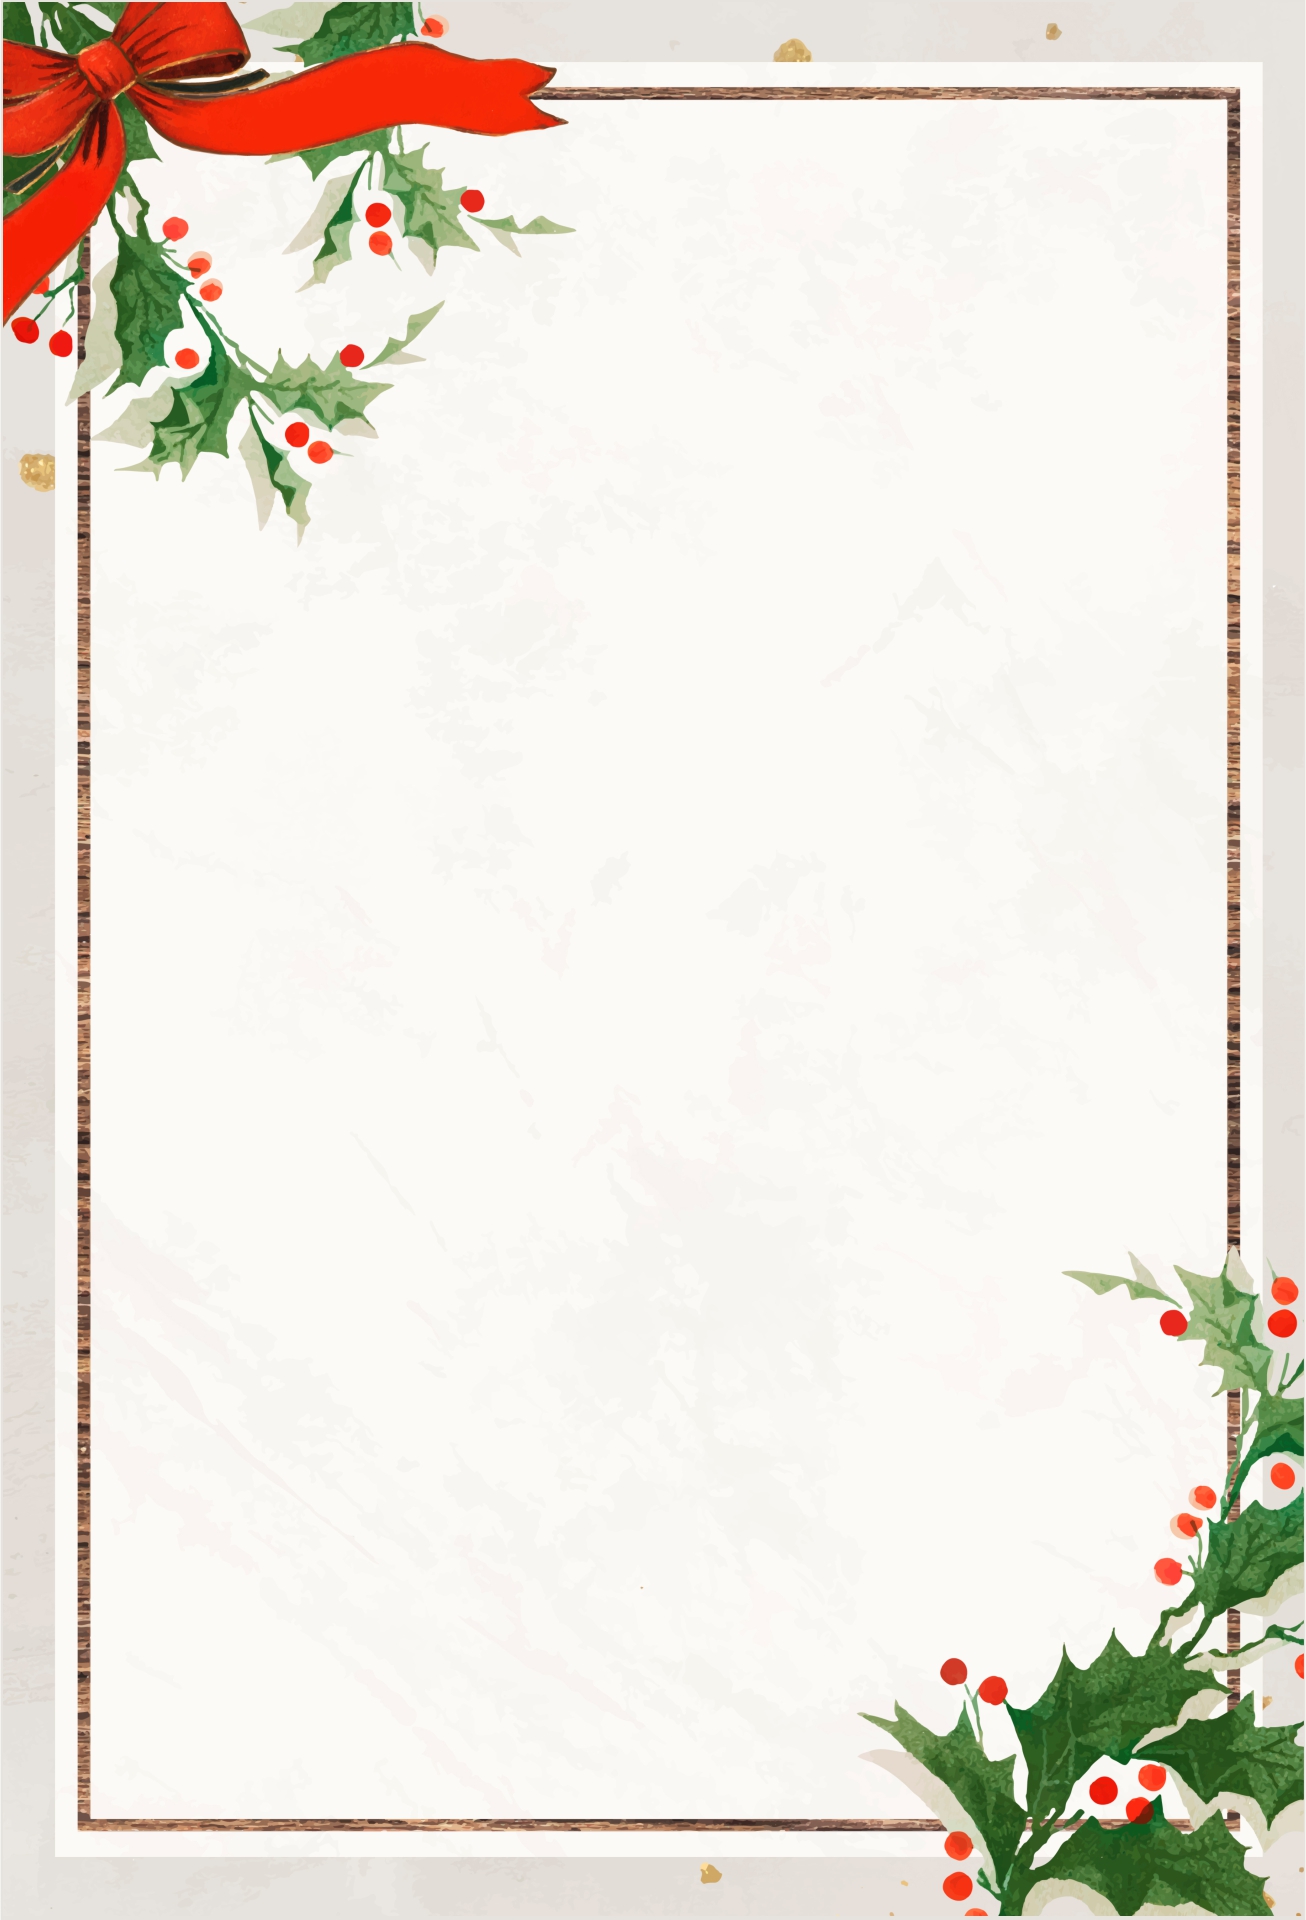 Printable Christmas Stationery Borders